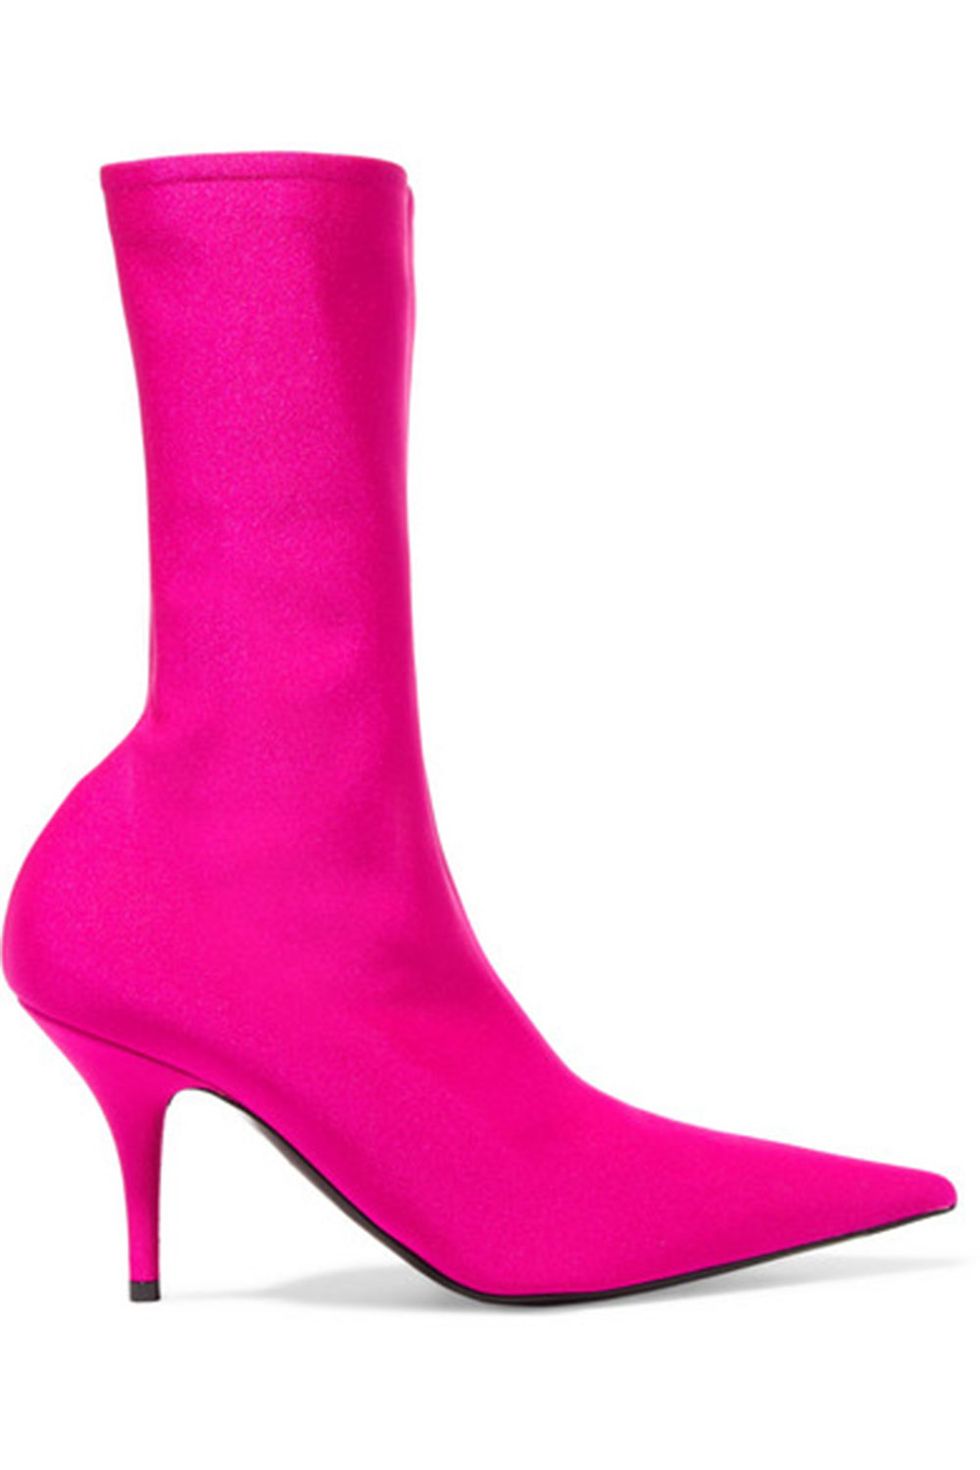 Footwear, Pink, High heels, Boot, Magenta, Shoe, Suede, Durango boot, Leather, 